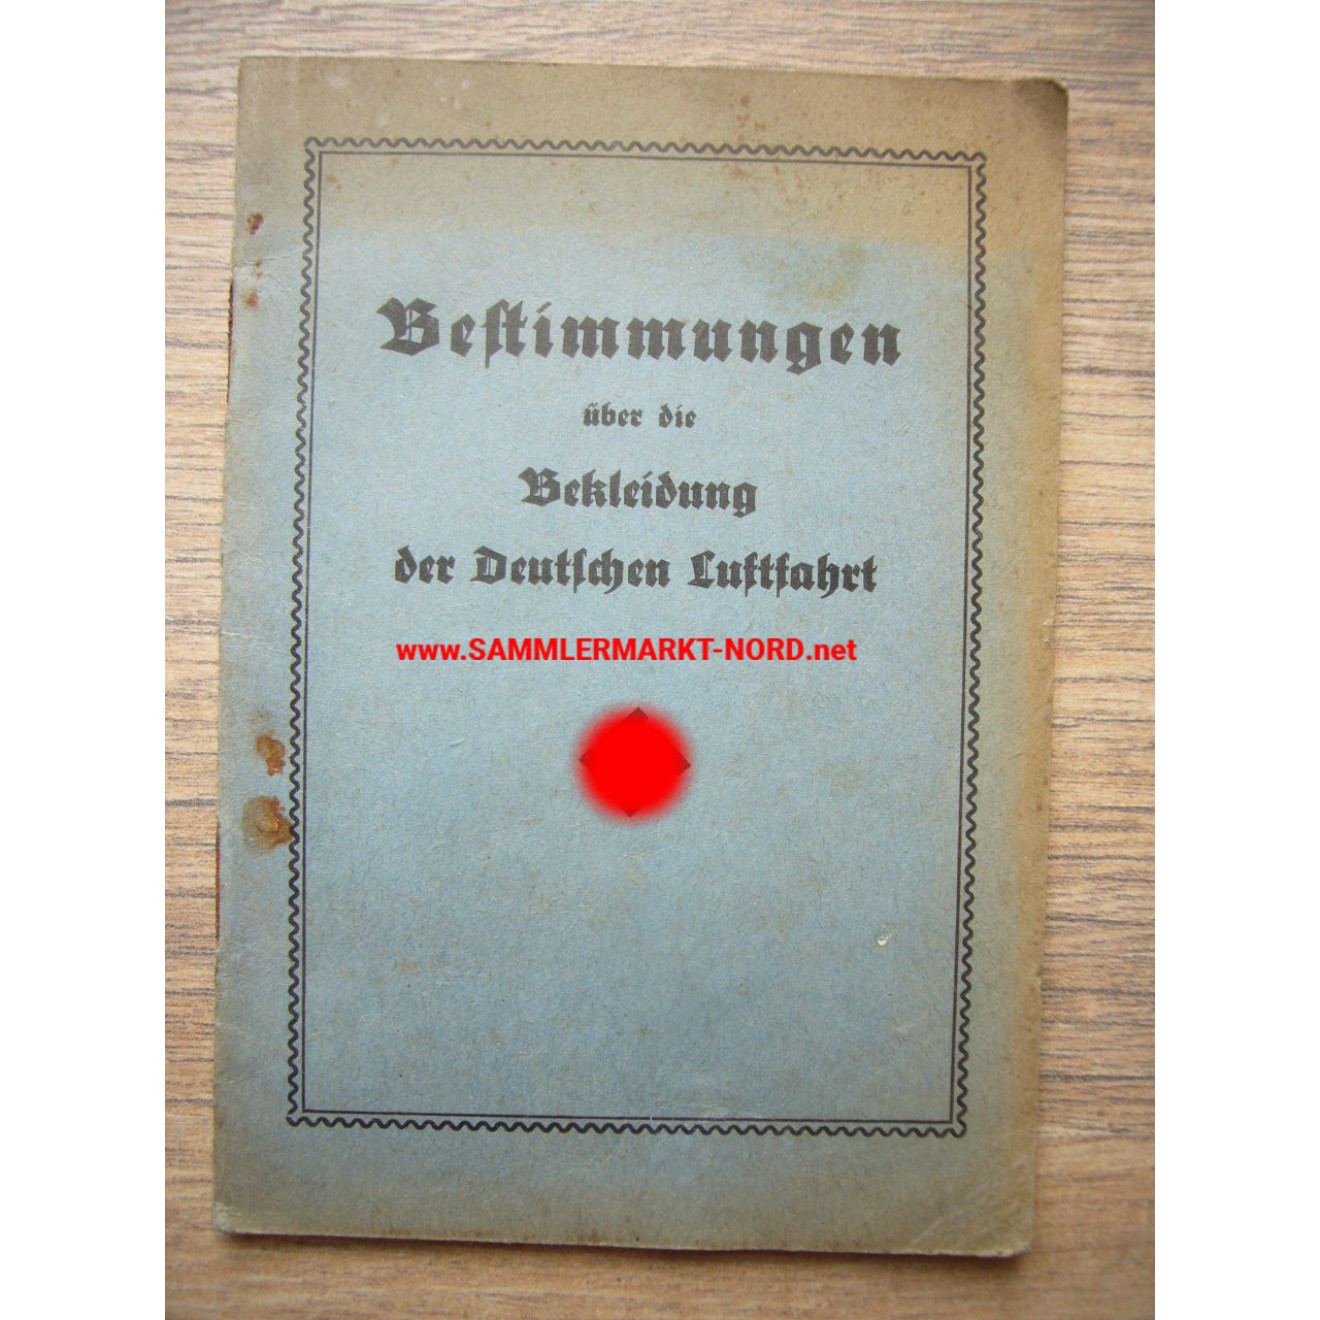 Bestimmungen über die Bekleidung der Deutschen Luftwaffe 1933